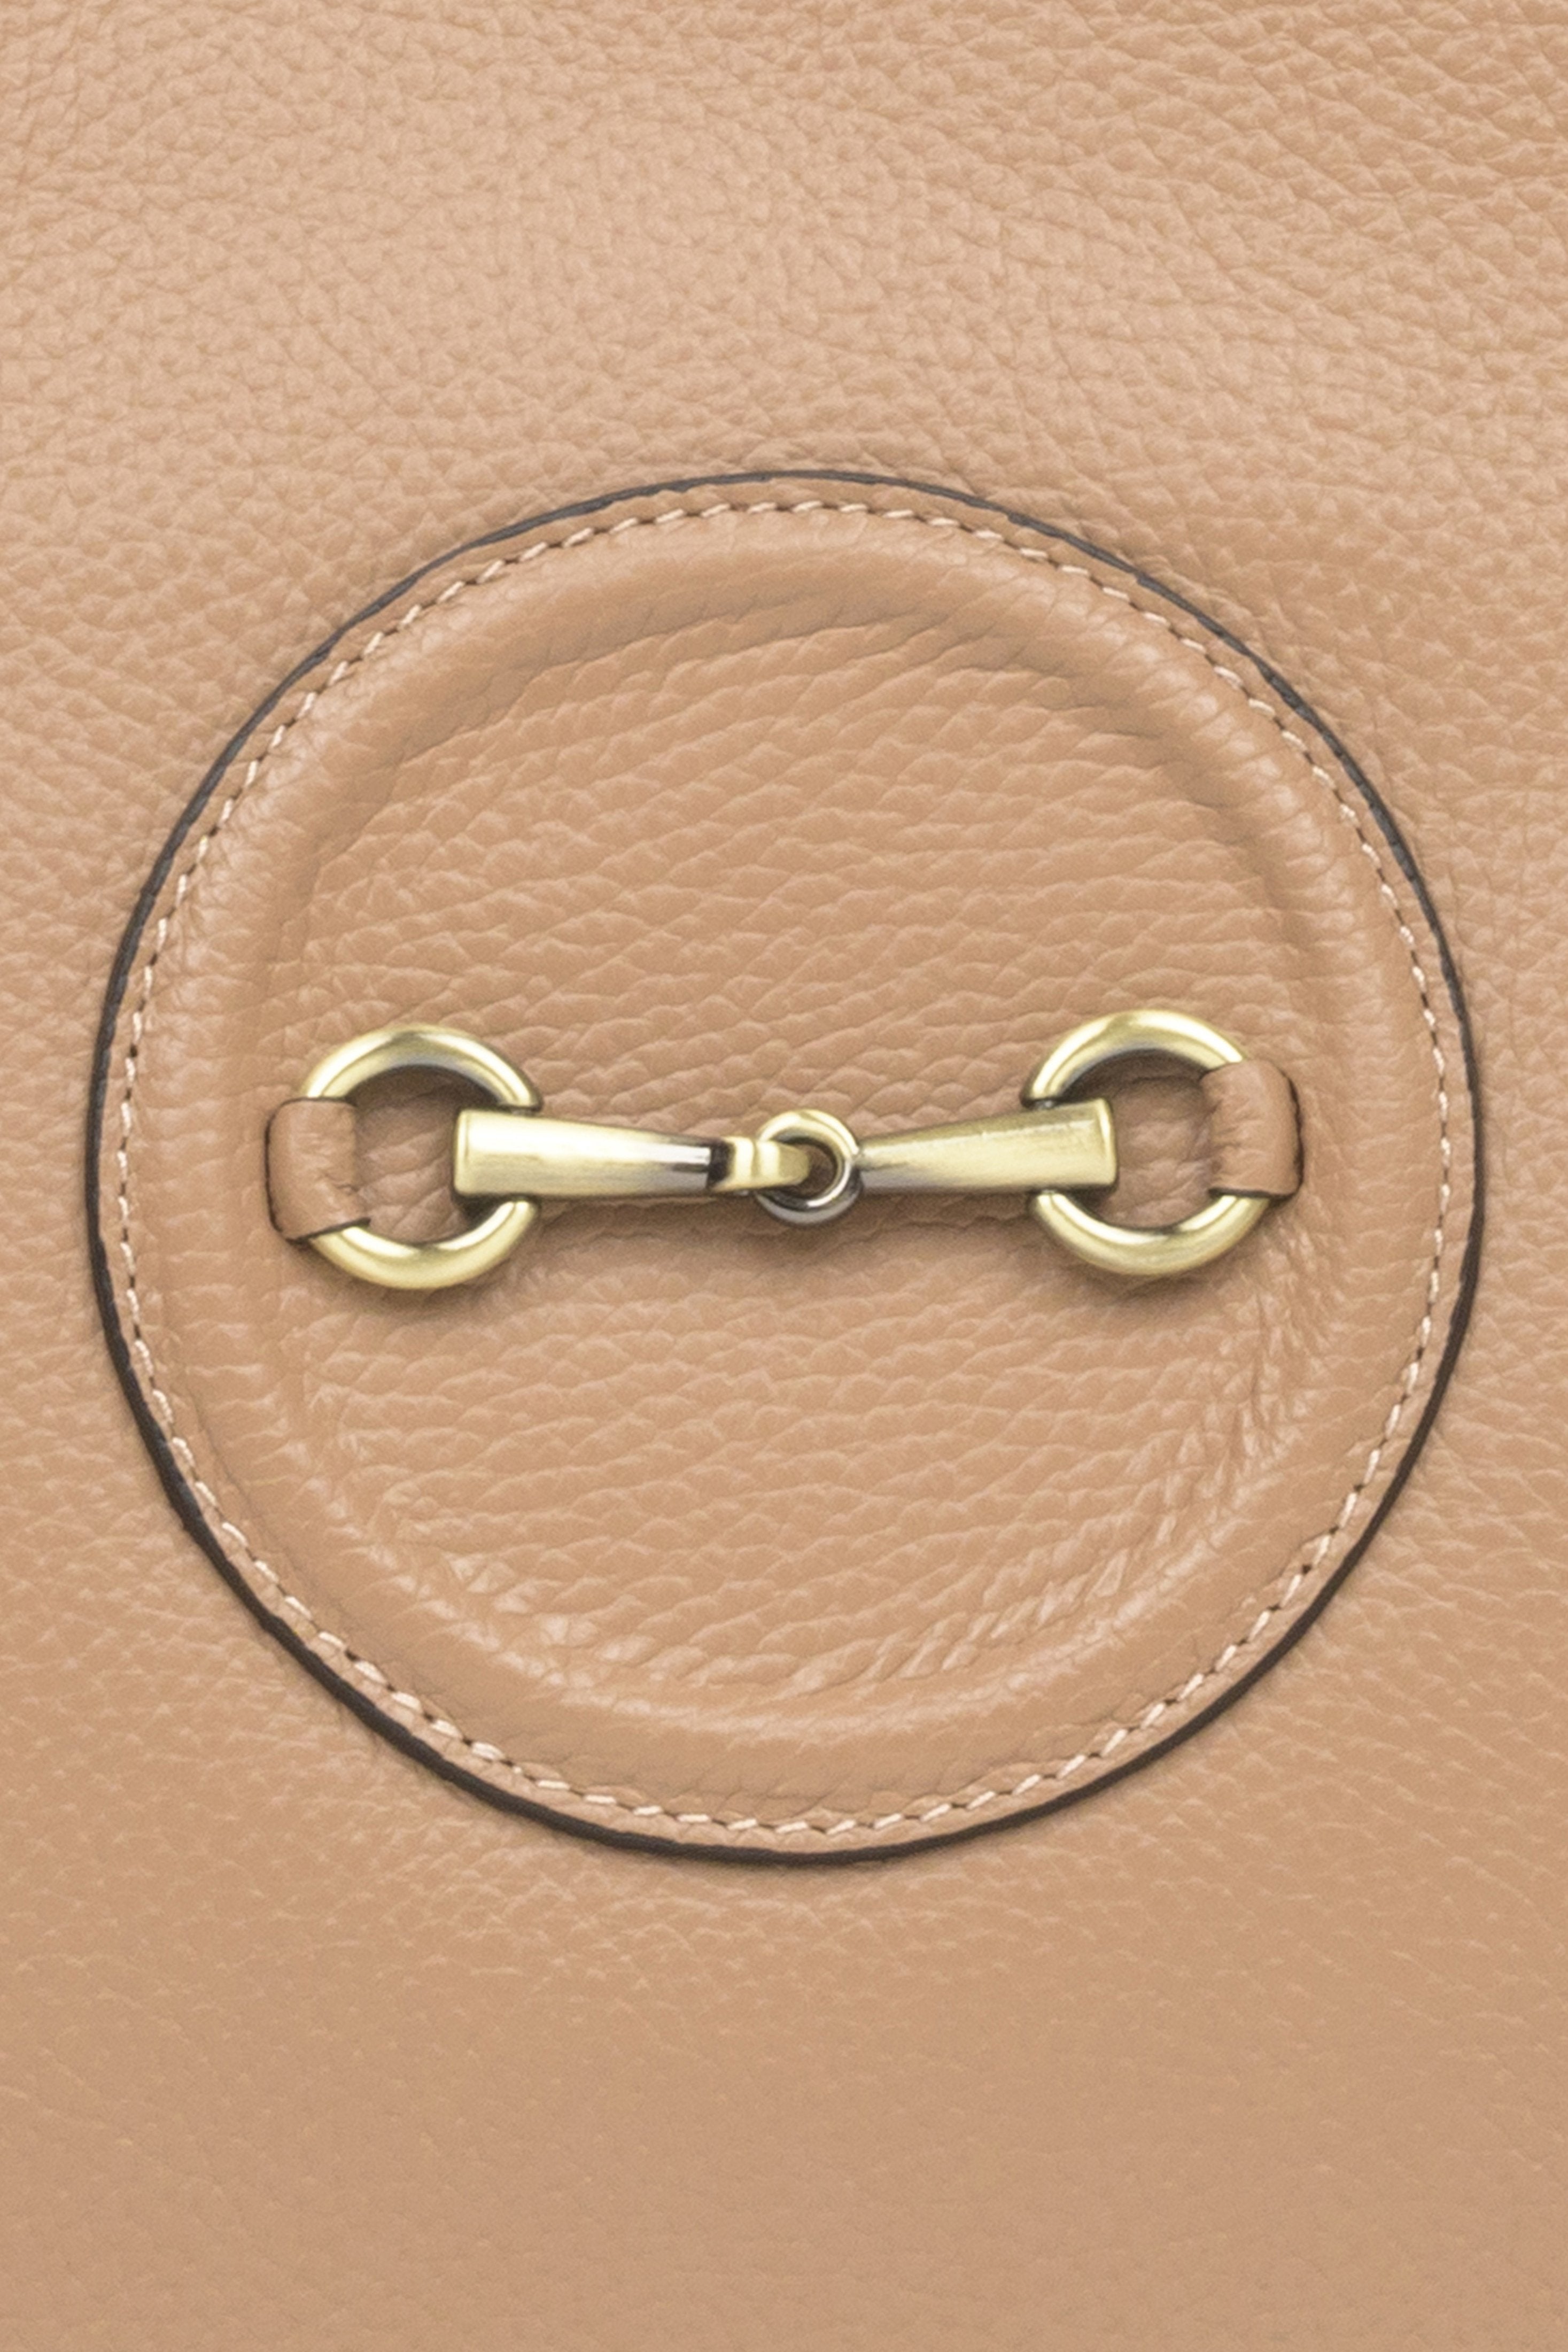 Pojemna, skórzana torebka damska w kolorze beżowym marki Estro ze złotymi okuciami - zbliżenie na detale.